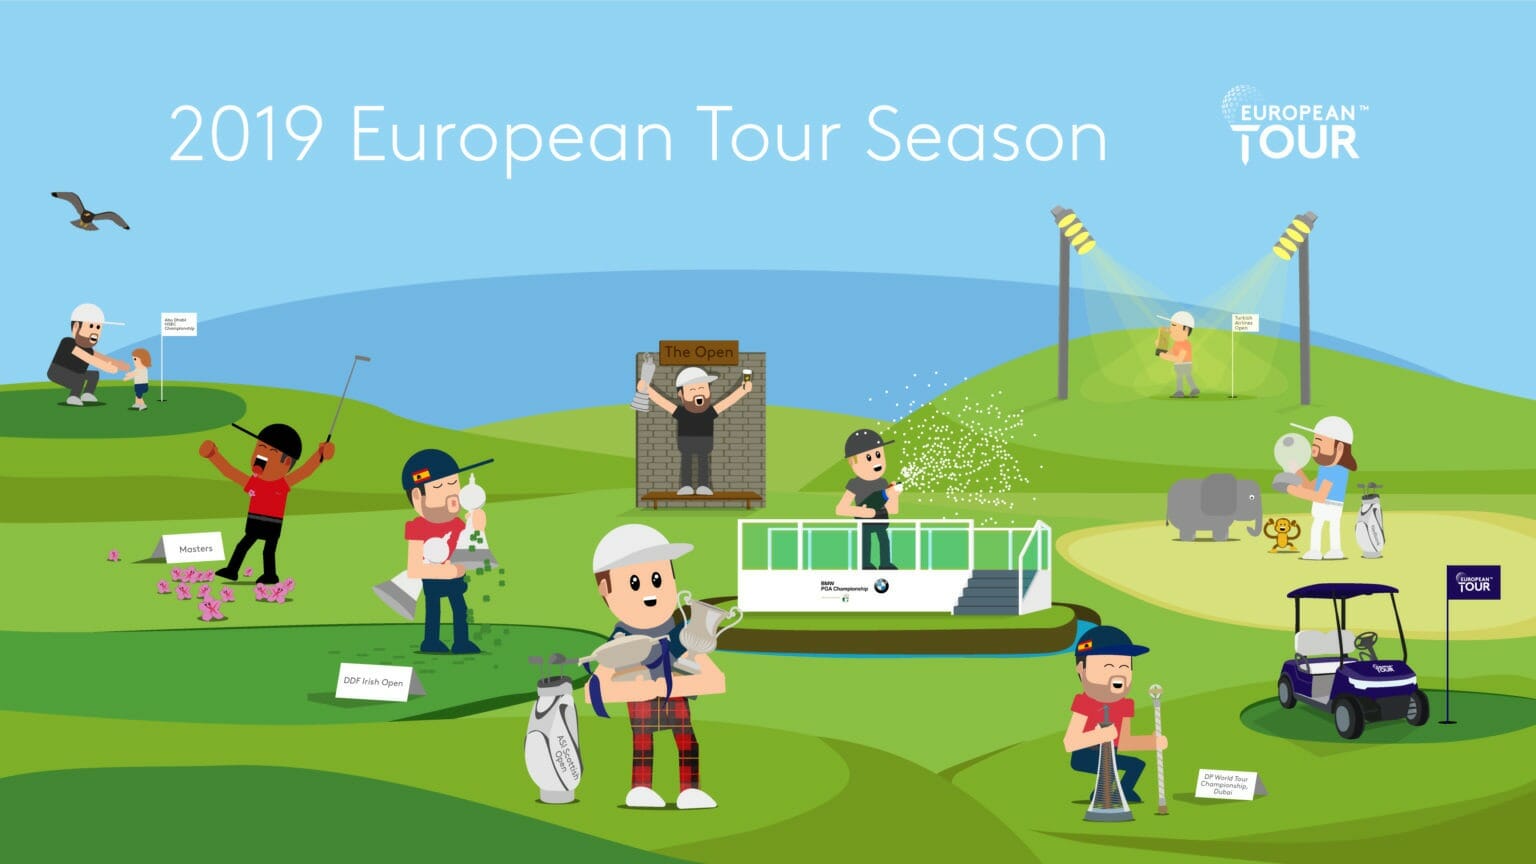 European Tour Illustration